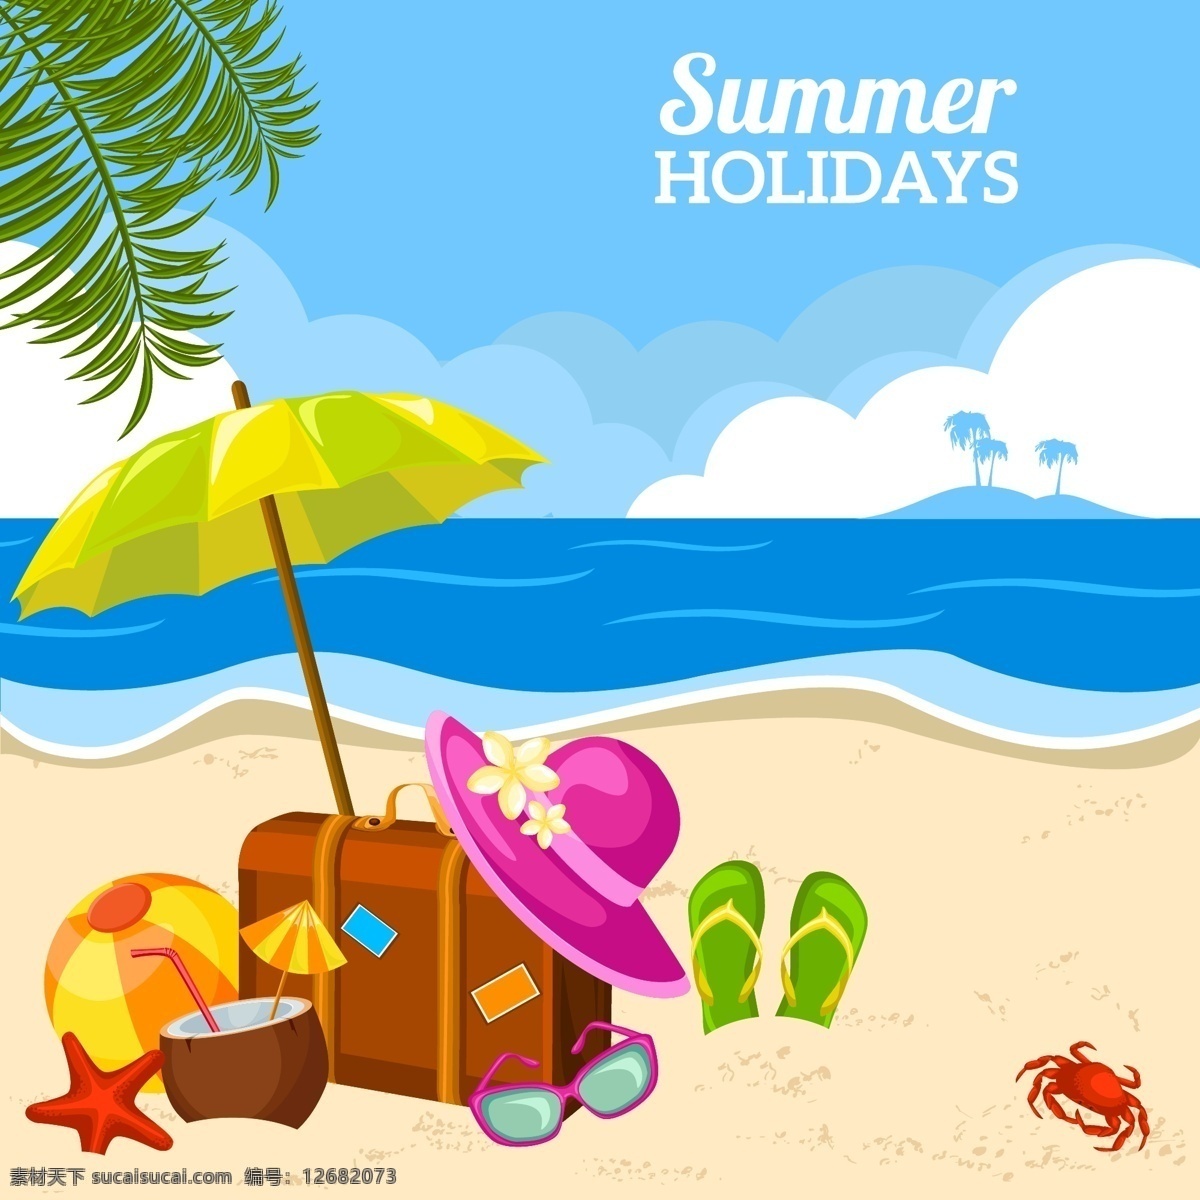 夏日 度假 沙滩 矢量 卡通夏季 卡通海边 大海 假期 遮阳帽 沙滩拖鞋 螃蟹 海星 棕榈树 椰子汁 太阳镜 行李箱